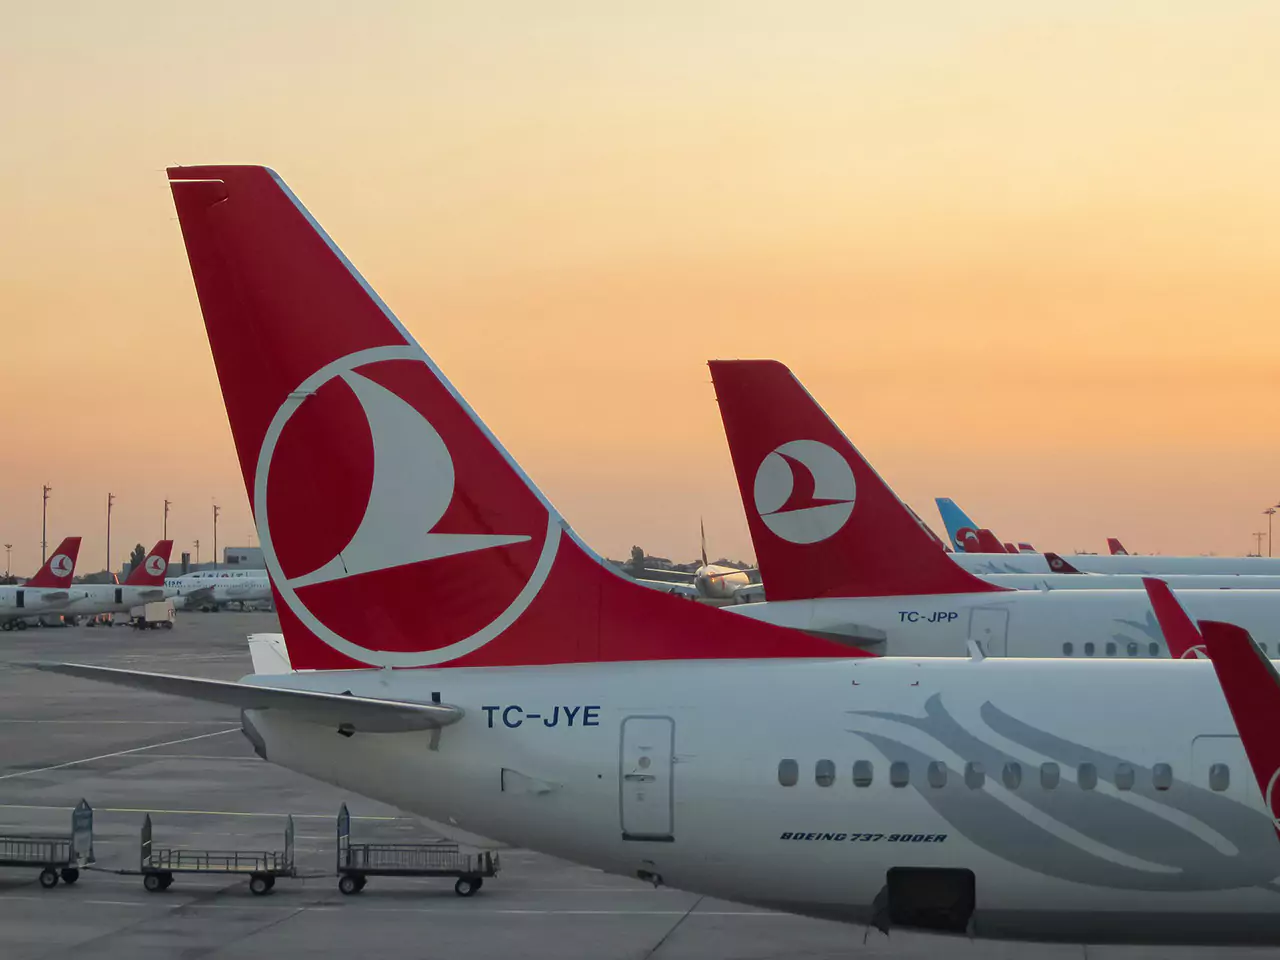 avion de linea aerea turca en la puesta del sol